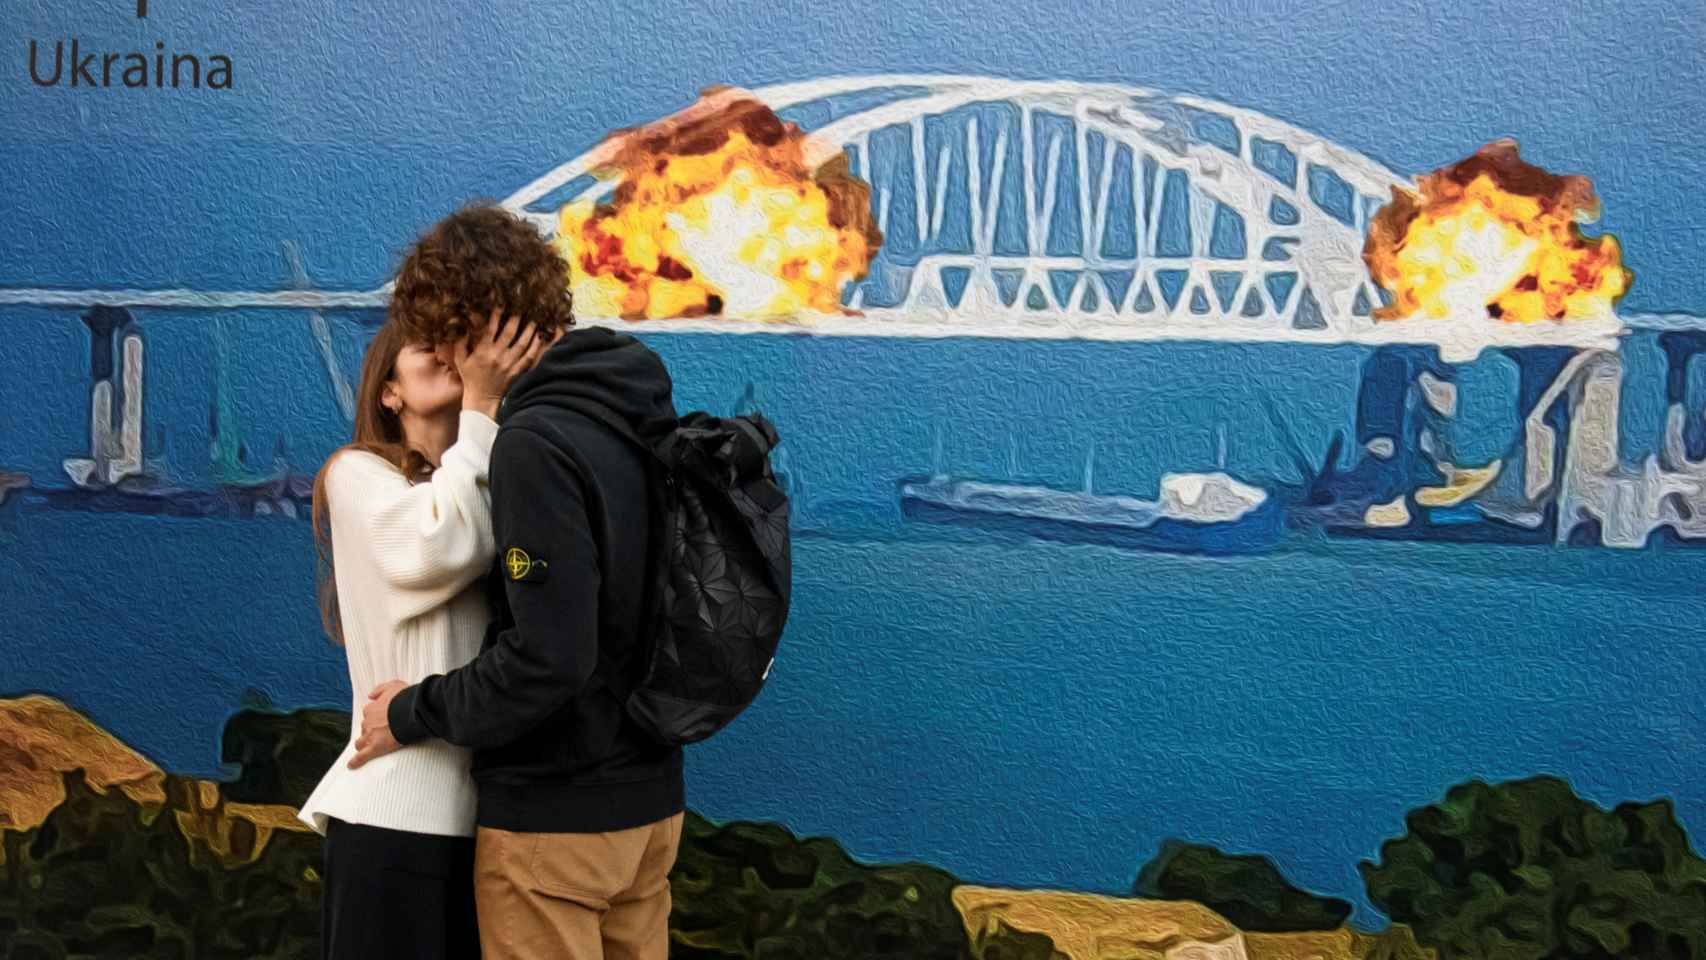 Una pareja se besa frente a un cuadro que representa el puente de Kerch en llamas.